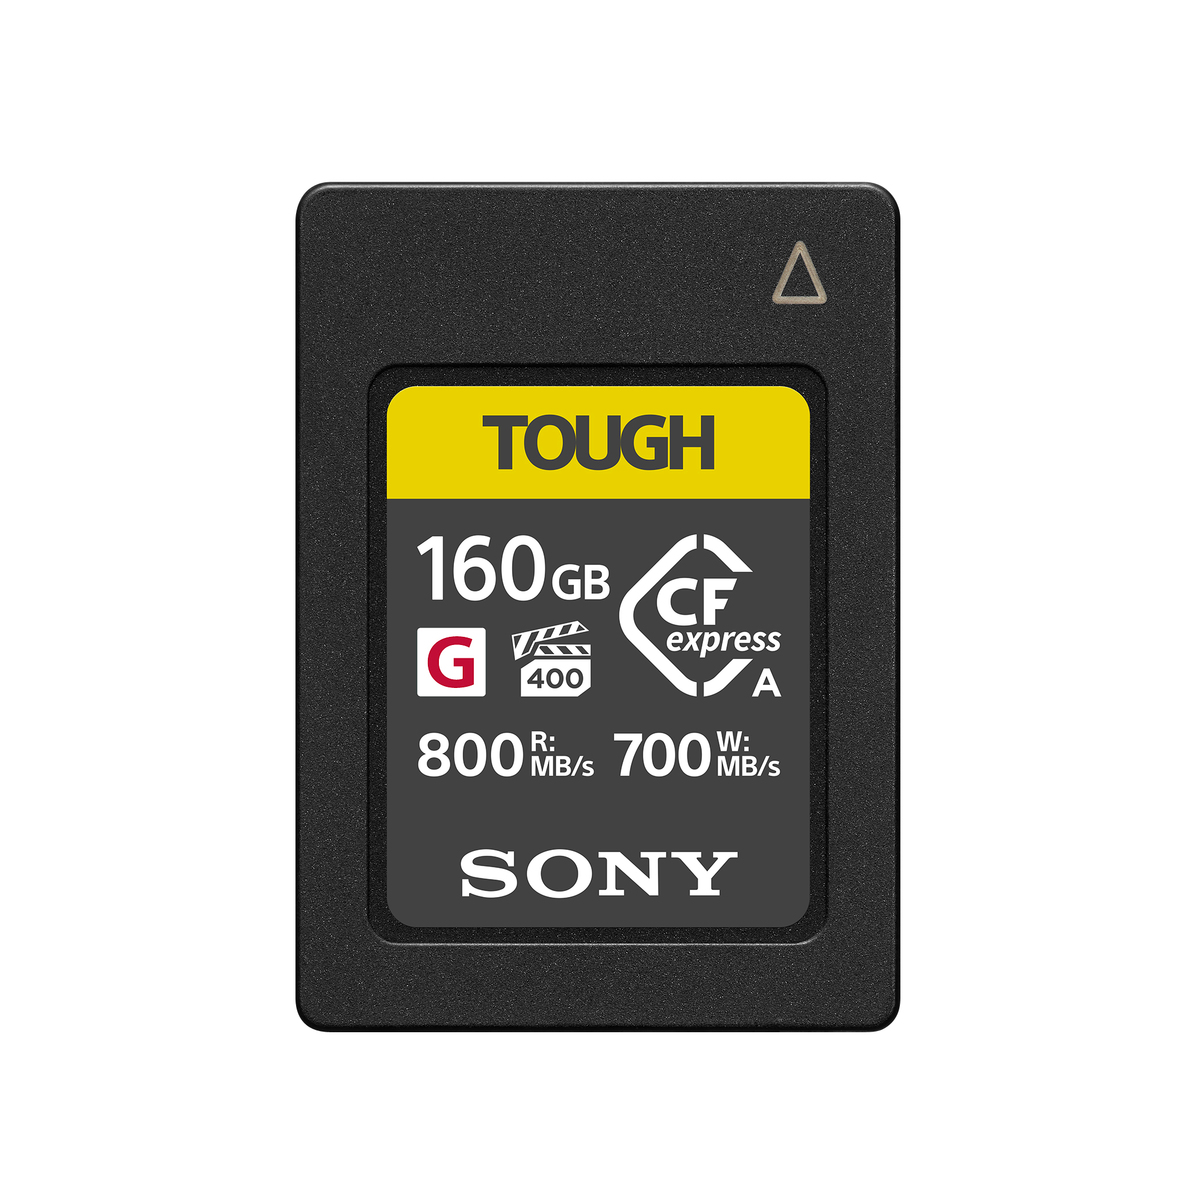 TOUGH CFexpress Type A 160GB